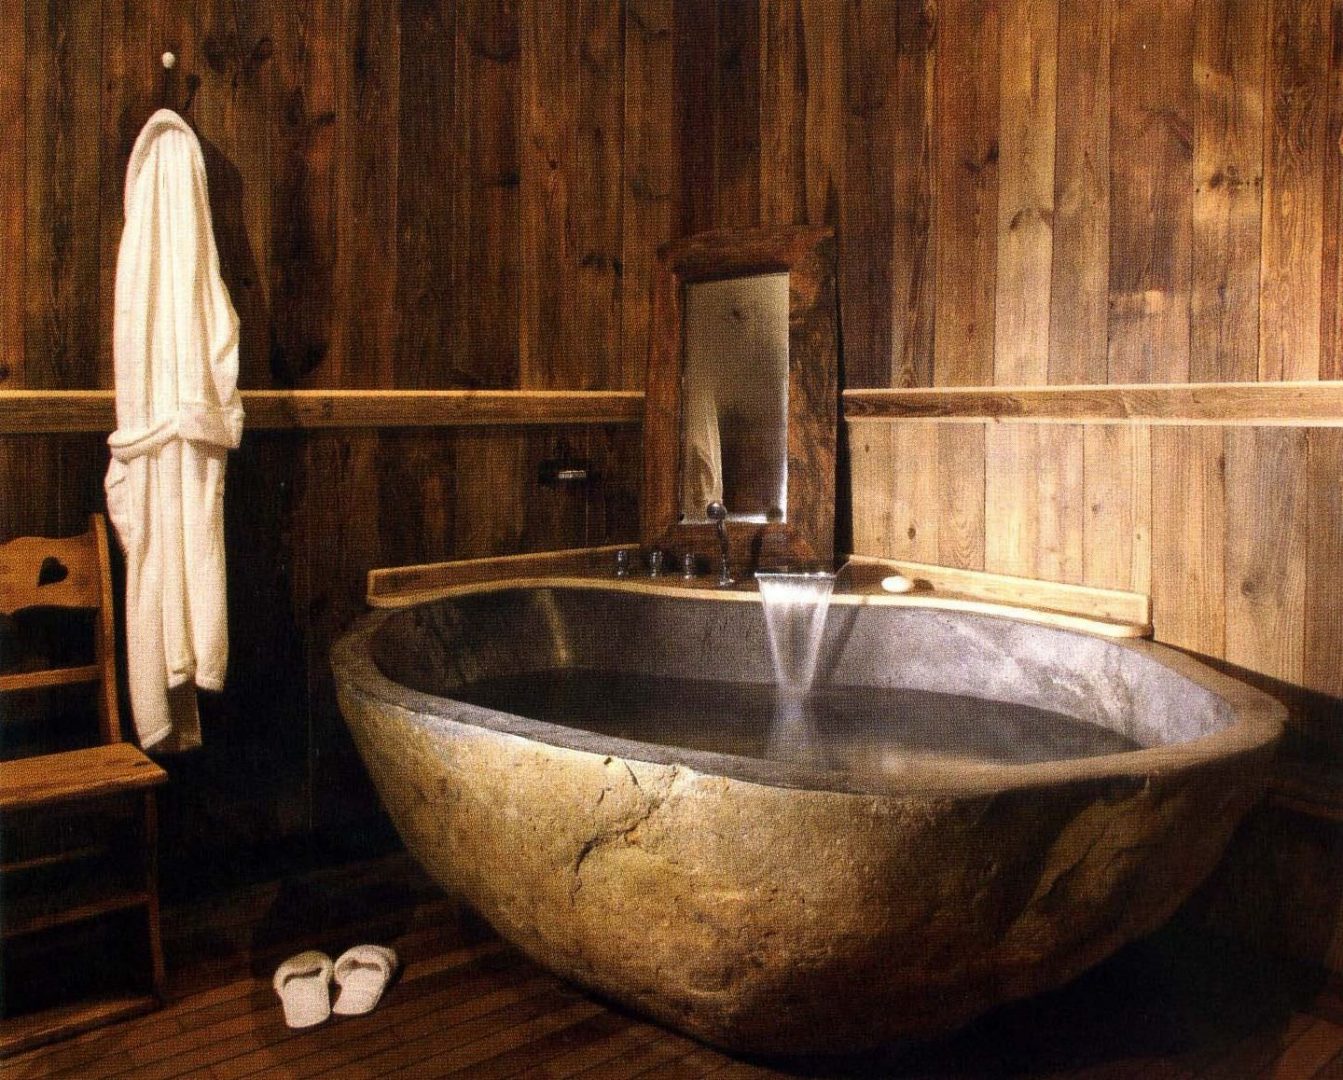 Bañera de baño de estilo rústico :: Imágenes y fotos